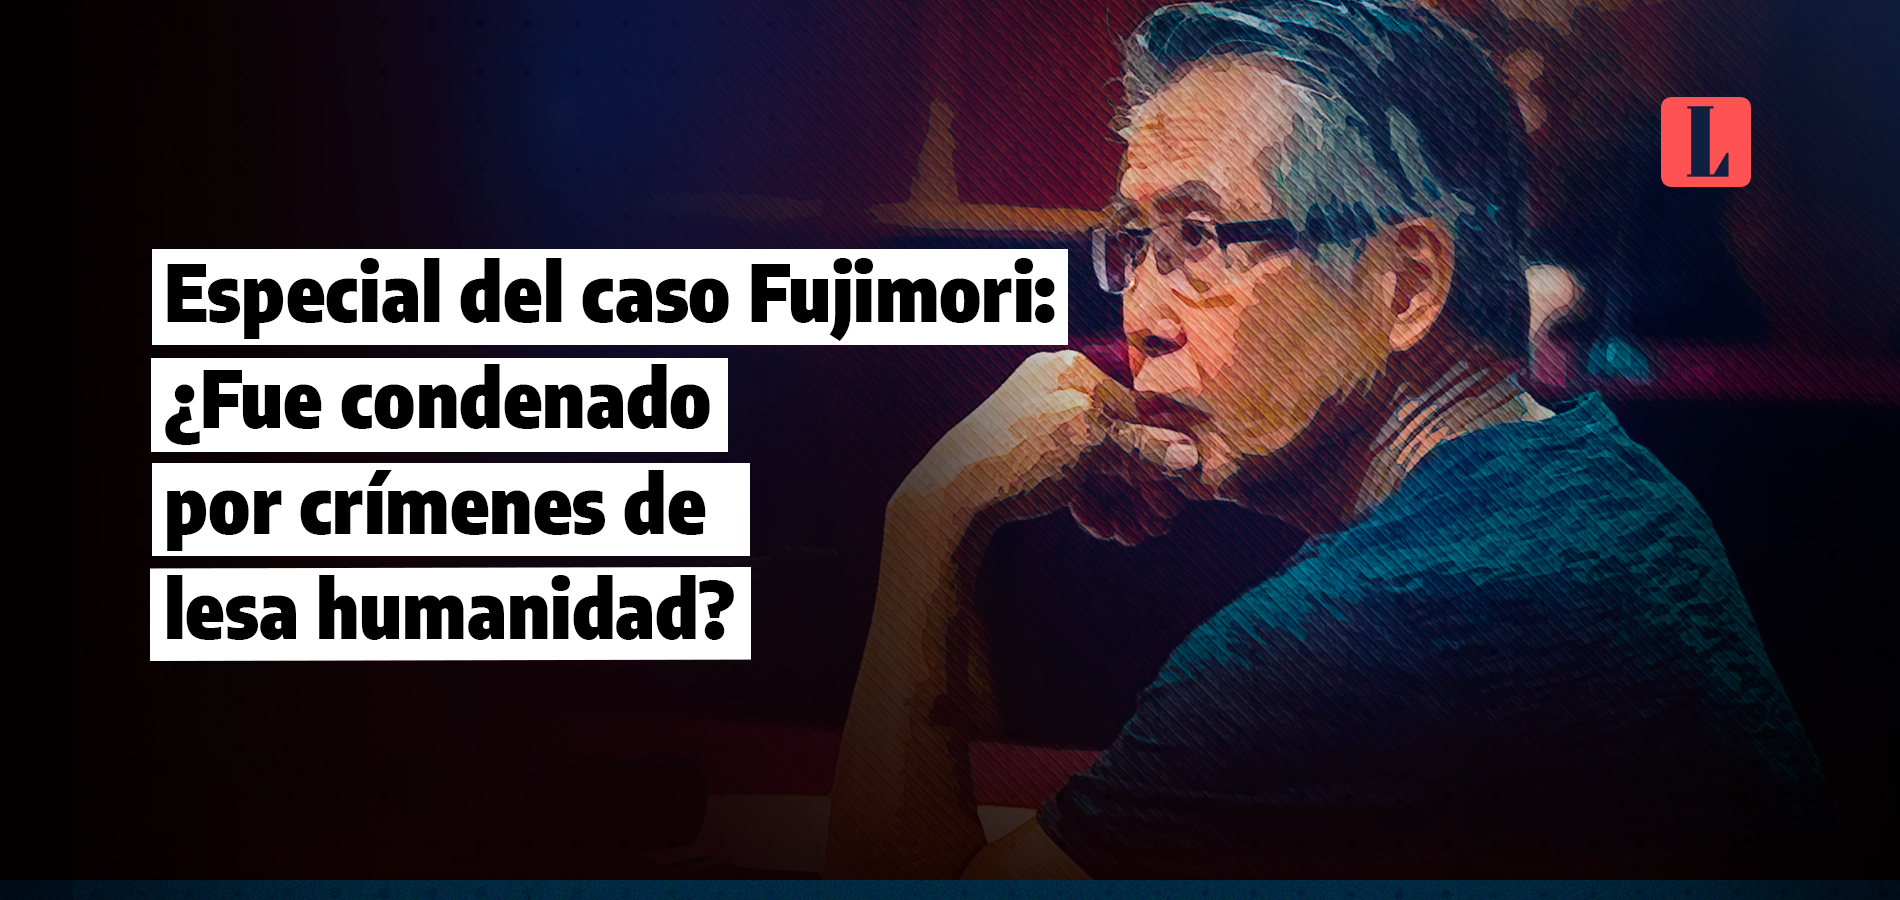 Especial del caso Fujimori: ¿Fue condenado por crímenes de lesa humanidad?